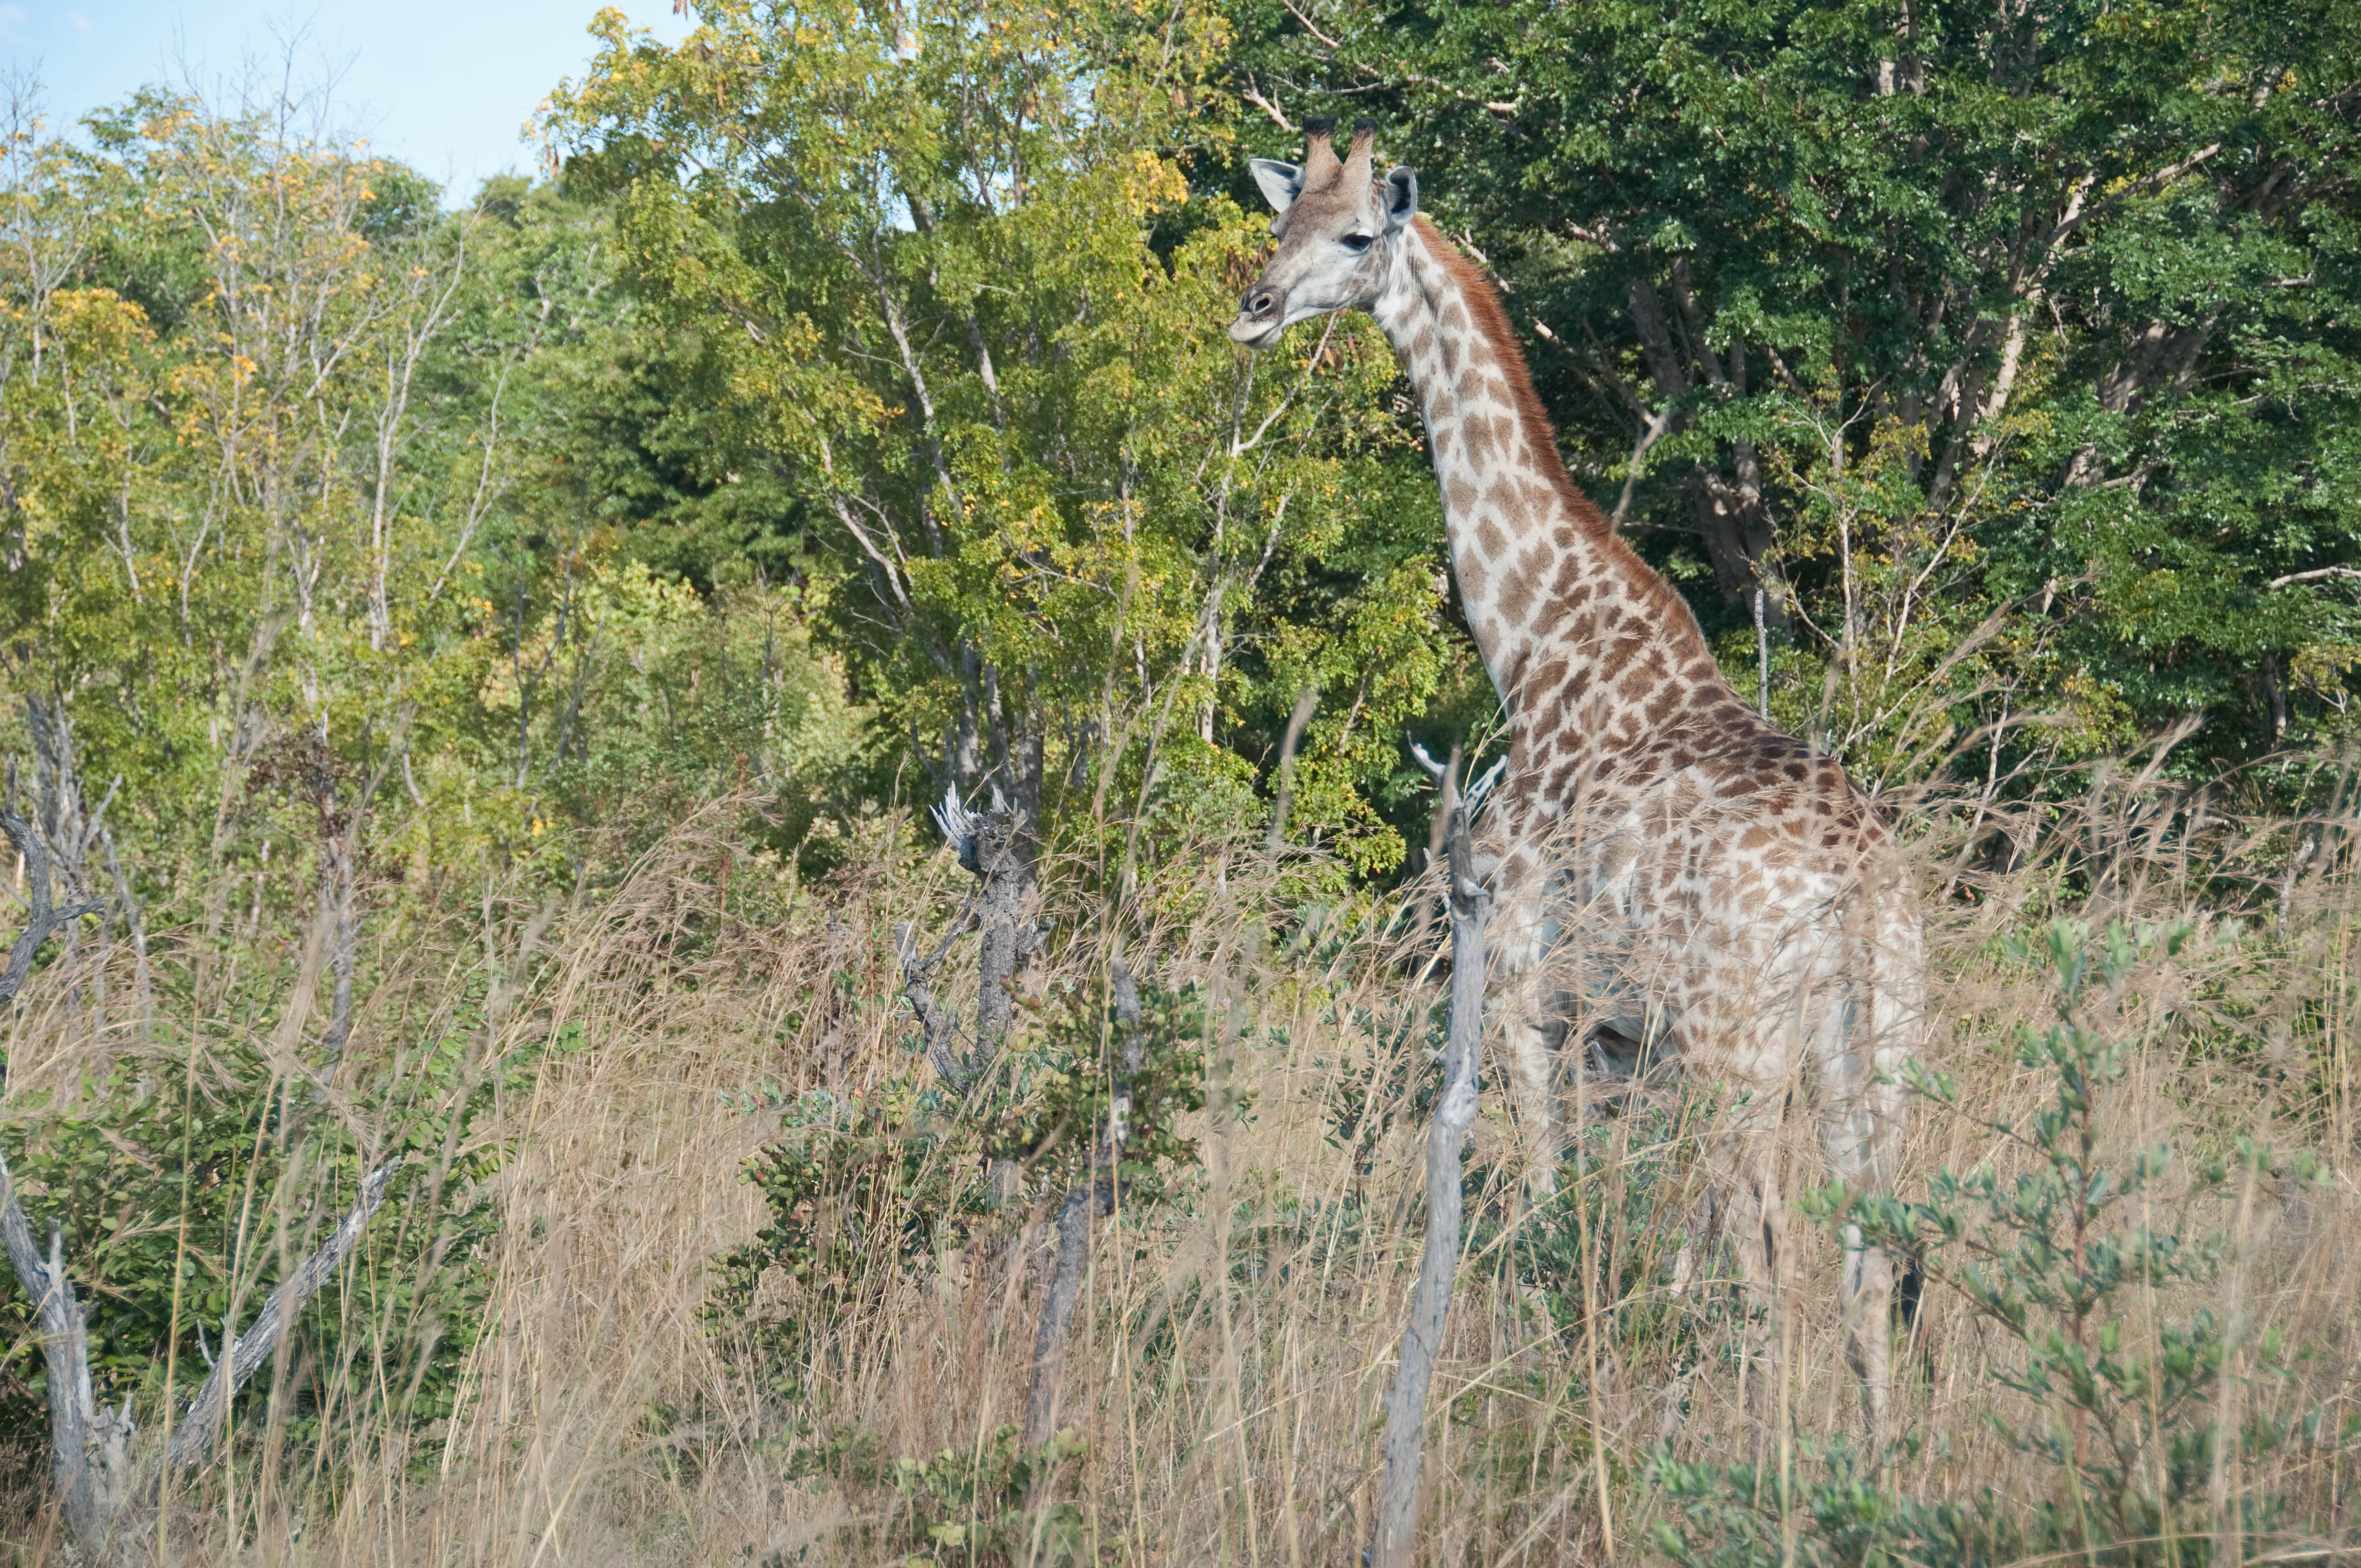 Hwange National Park, Zimbabwe